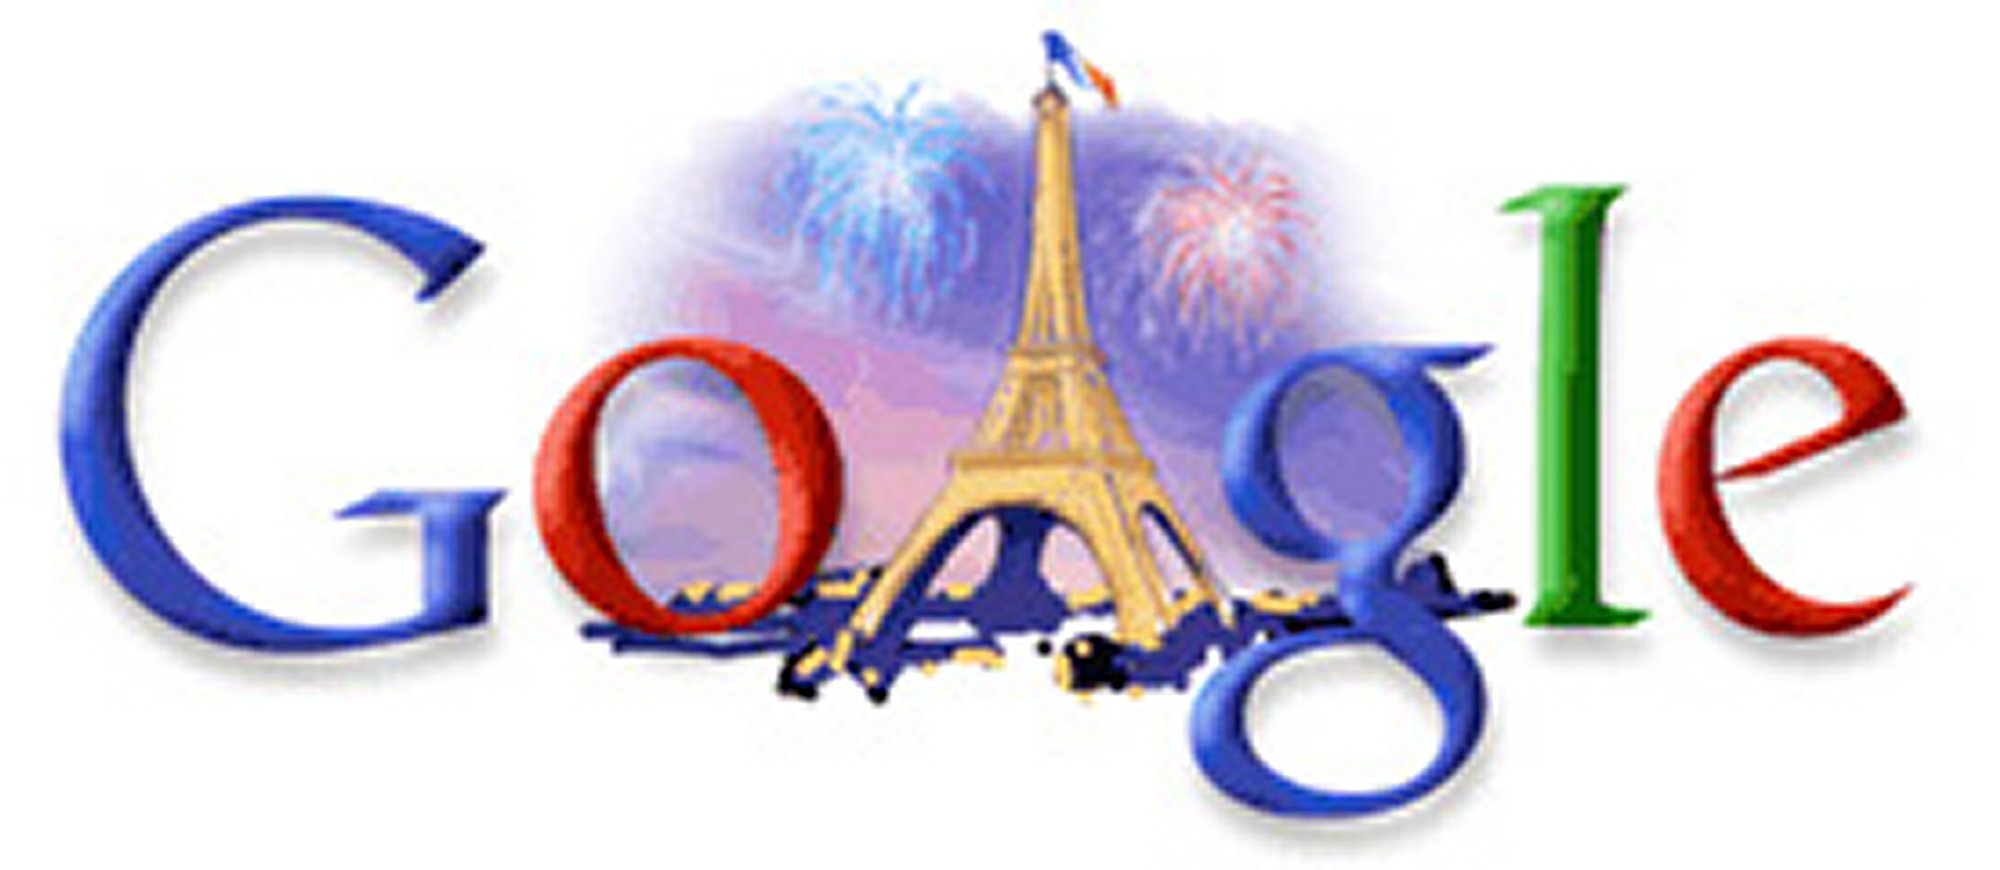   "جوجل فرنسا" يغير شعاره بمناسبة الجولة الثانية لانتخابات الرئاسة